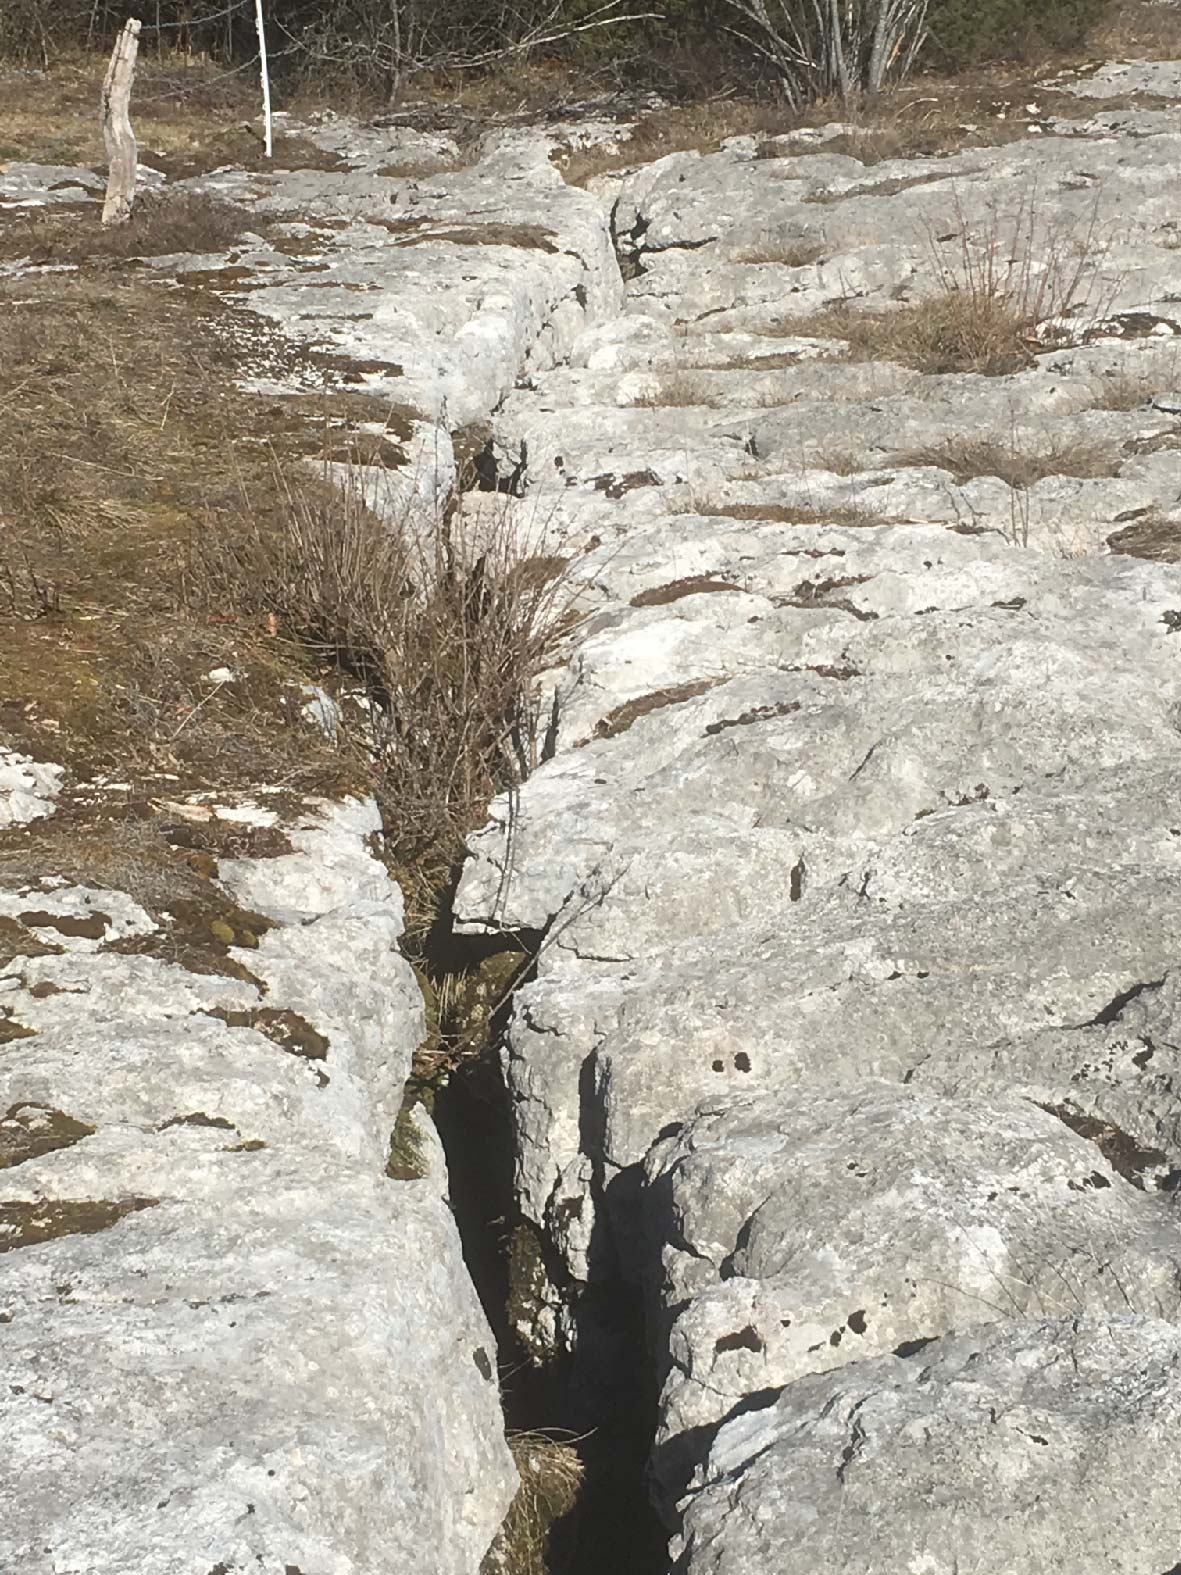 Fissure d'une roche ou d'un terrain sans déplacement des deux blocs.

Photo prise sur le lapiaz de Loulle  (V. Fister)